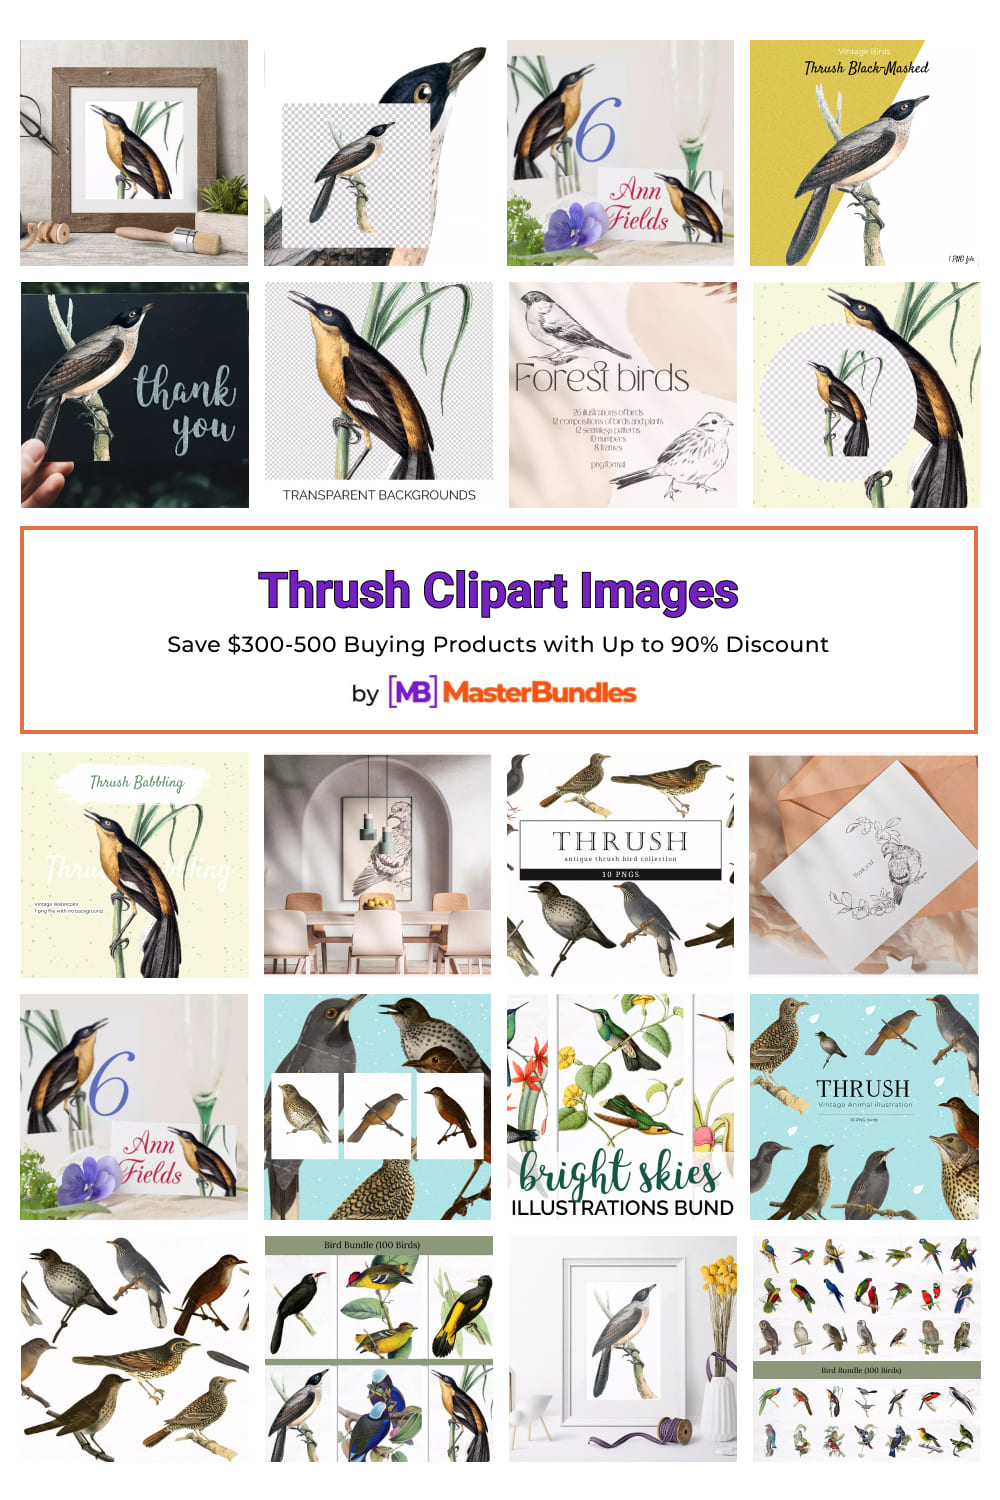 Thrush Clipart Images Pinterest.